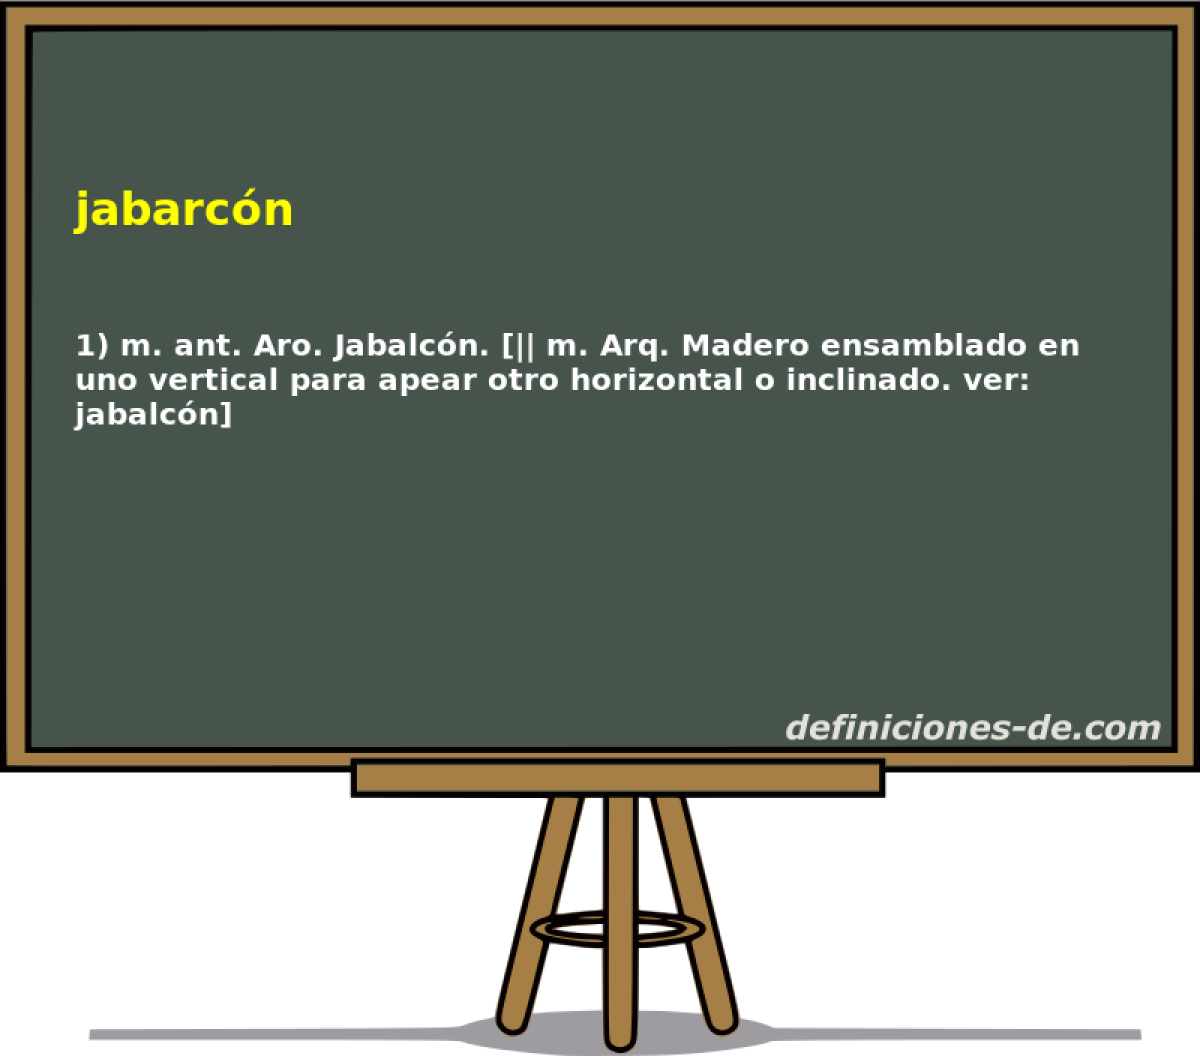 jabarcn 